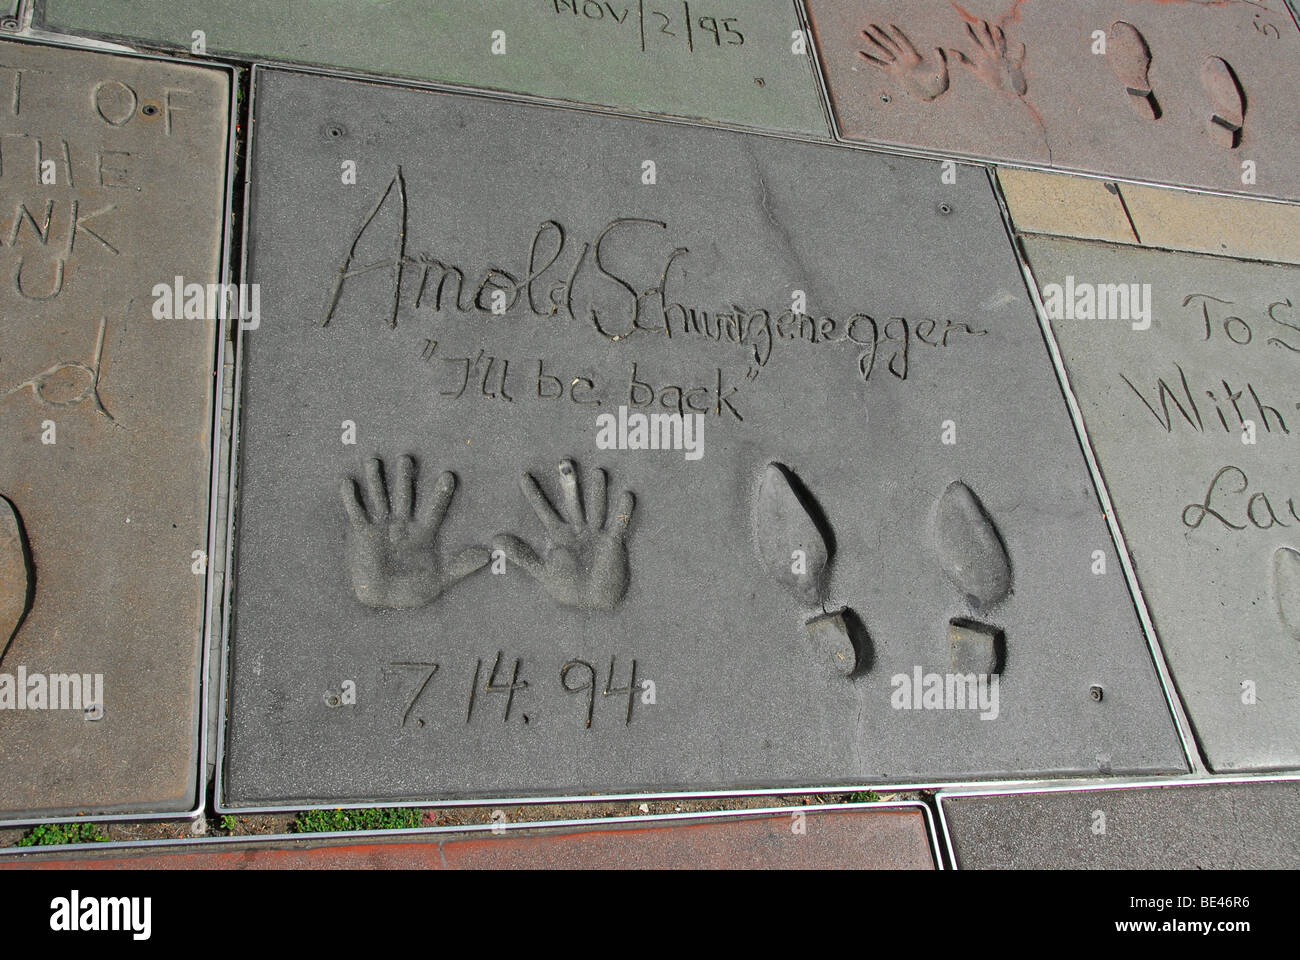 Part- et empreintes de Arnold Schwarzenegger en face du Grauman's Chinese Theatre, Los Angeles, Californie, USA, Amérique du Nord Banque D'Images